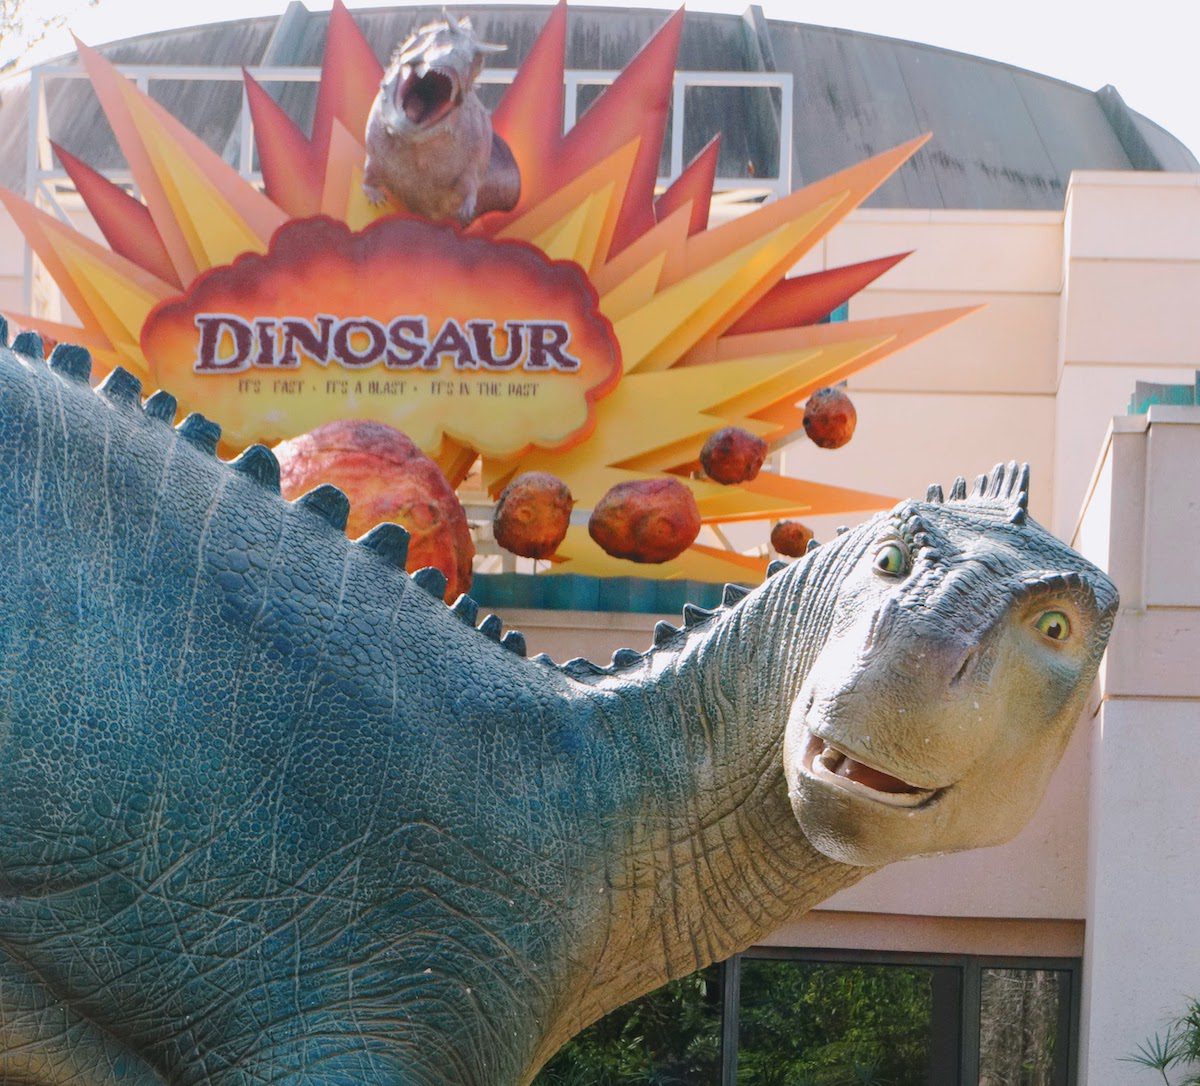 Dinosaur at Disney's Animal Kingdom